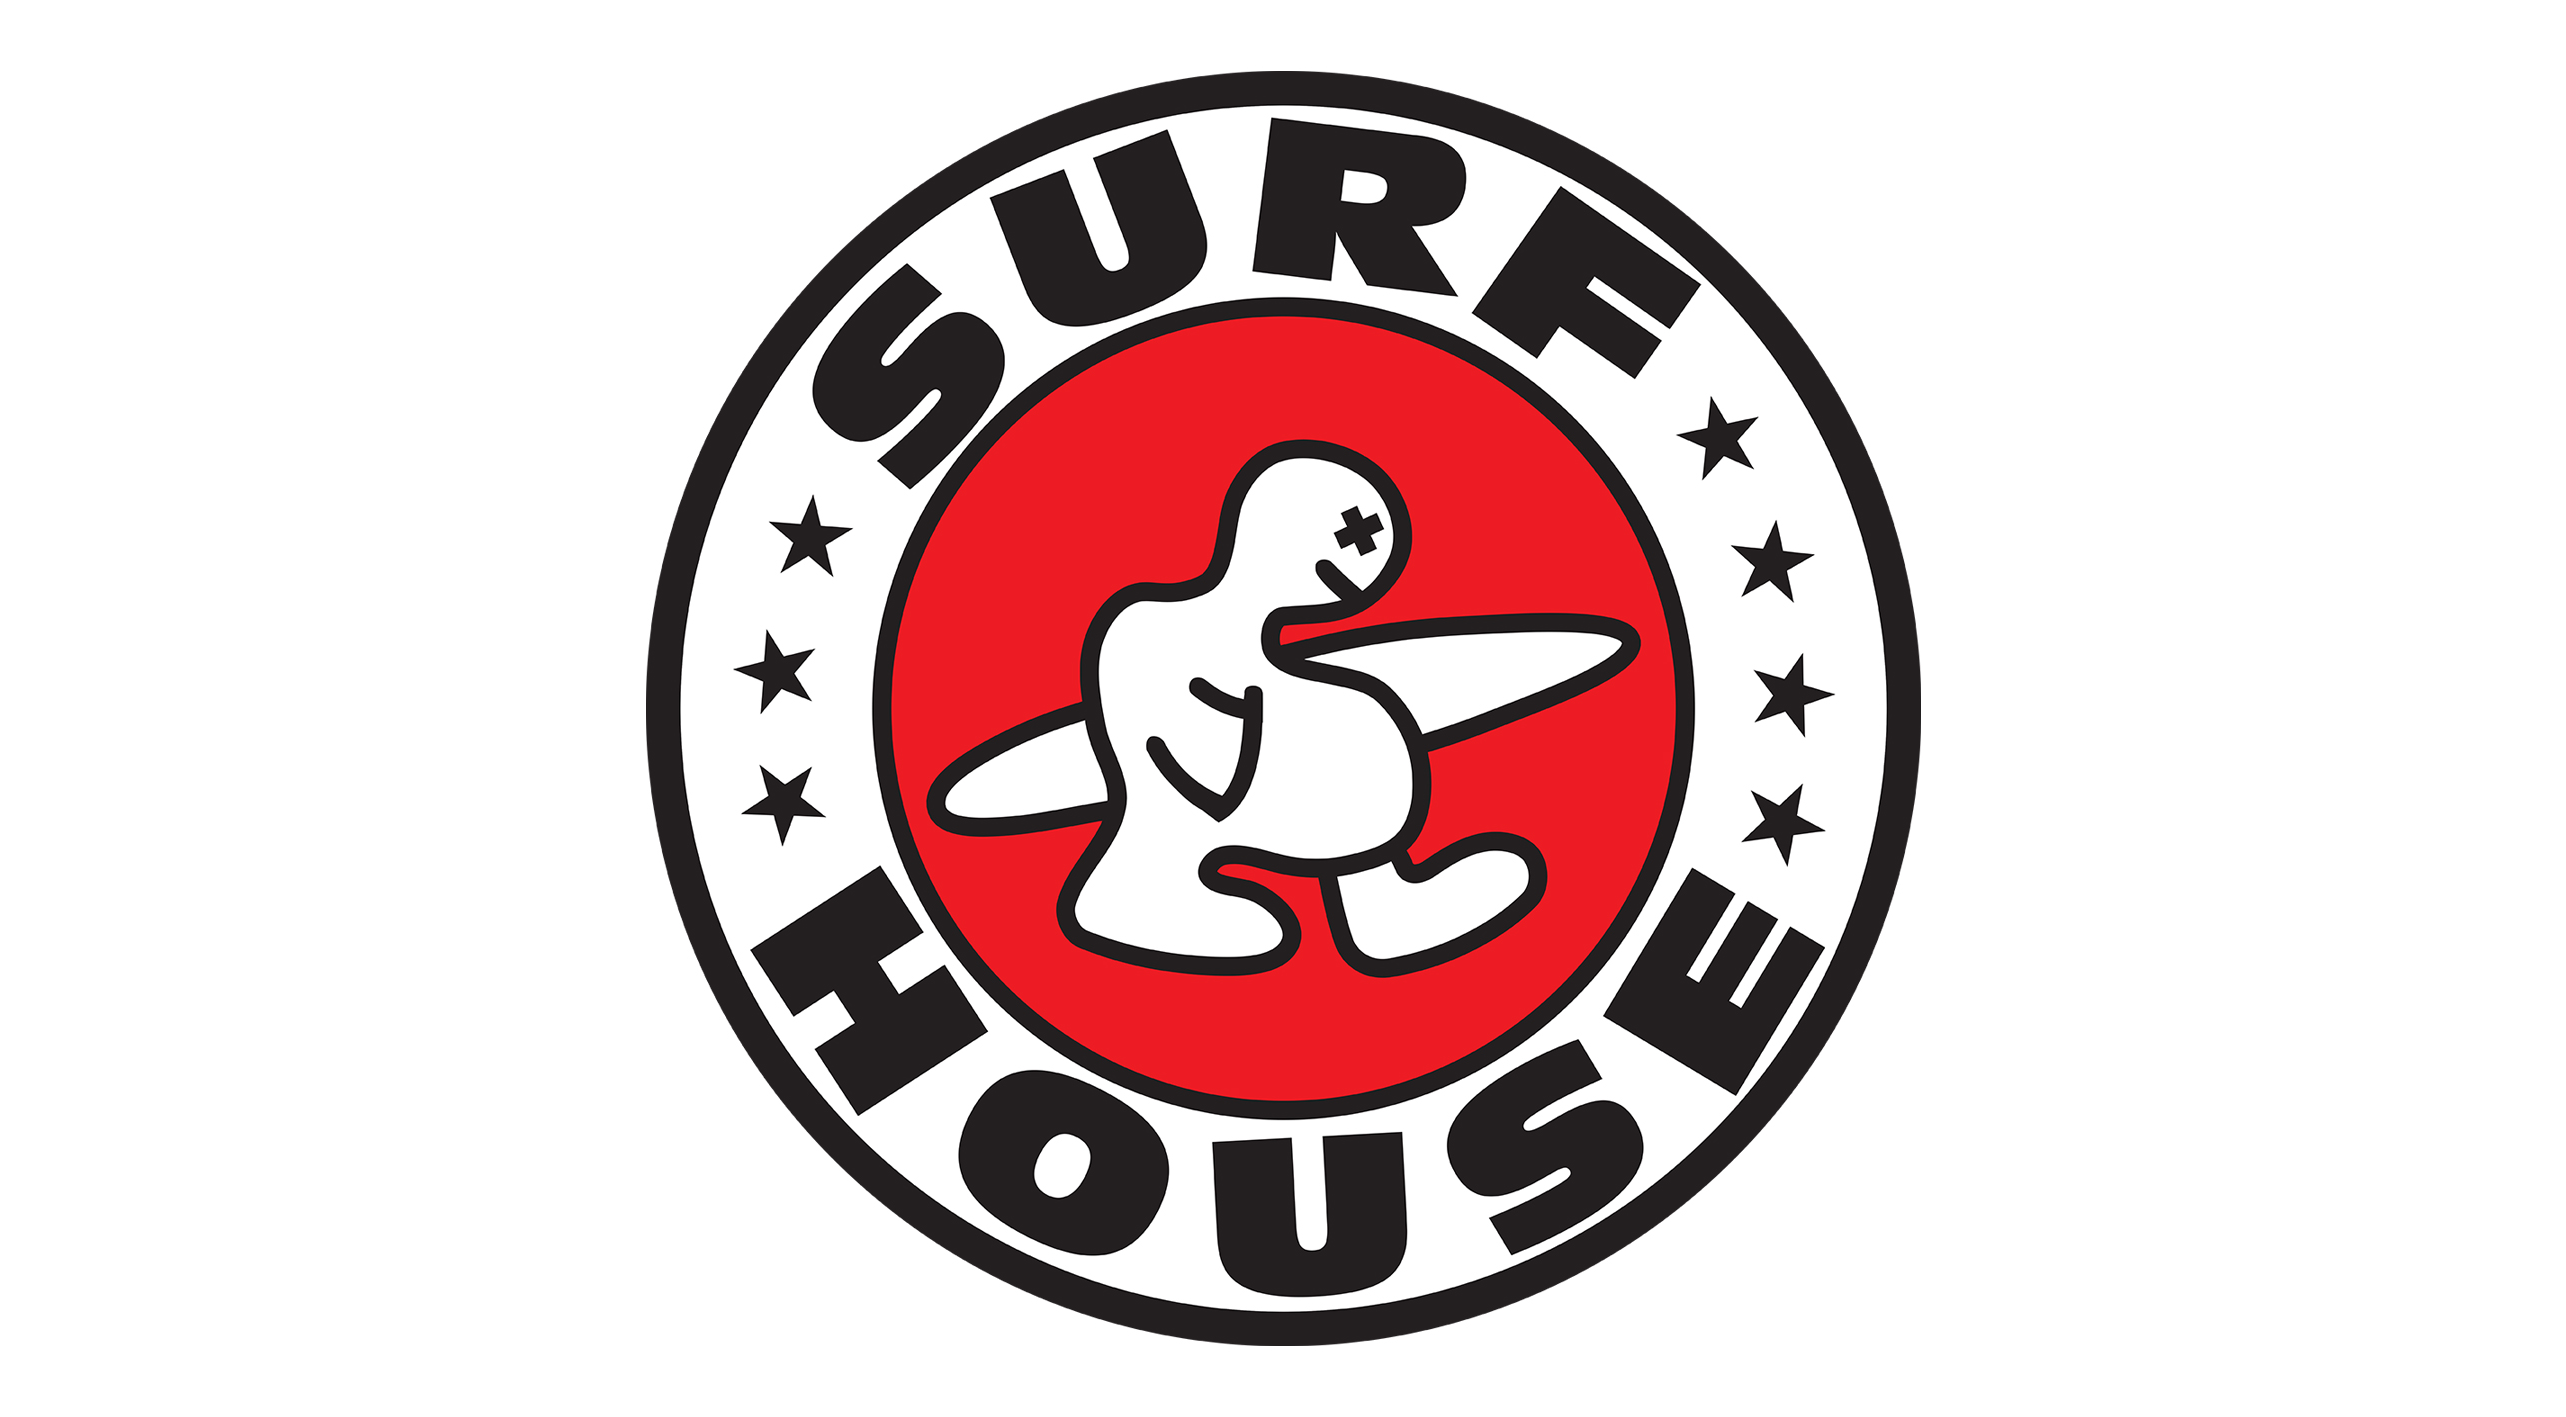 Surfhouse